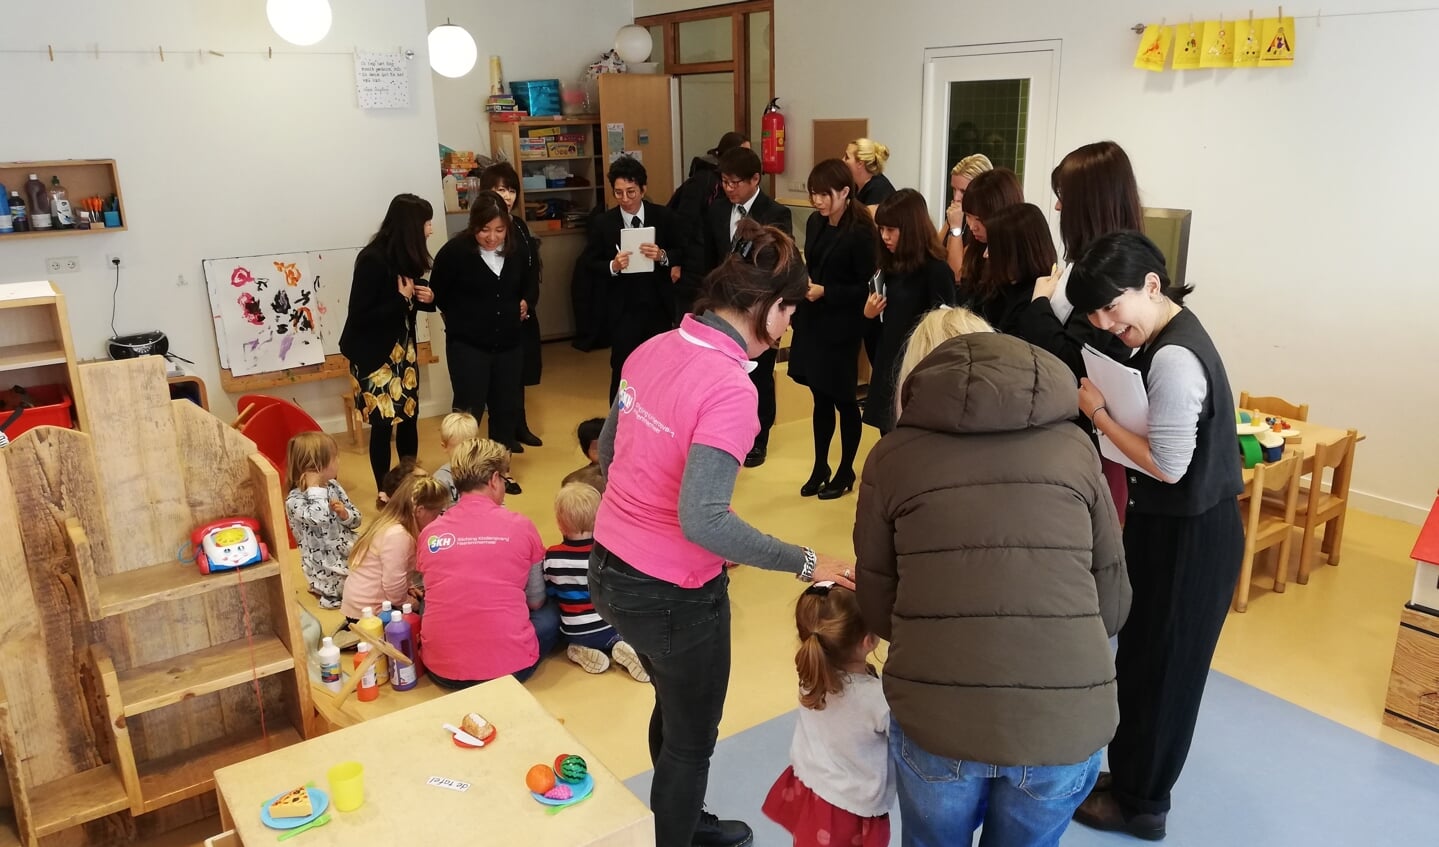 Japanse cursisten bezoeken de enige Peuteracademy van Haarlemmermeer in SKH-kindercentrum 't Groene eiland in Hoofddorp-Floriande